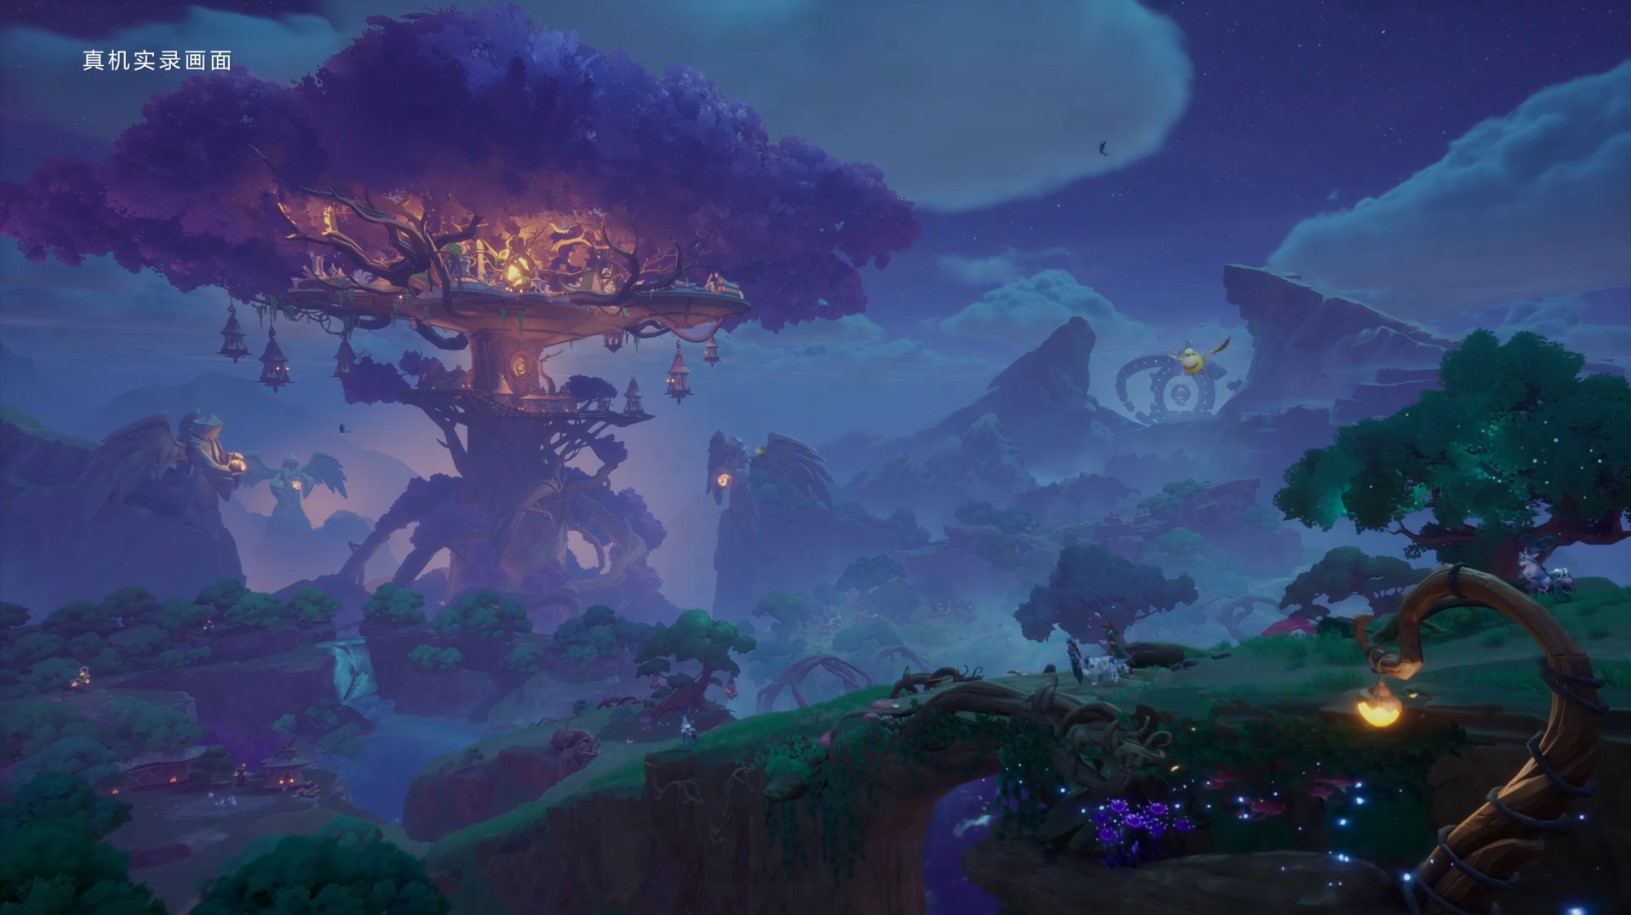 شرکت تنسنت قصد دارد MMO جدیدی را جایگزین World of Warcraft کند [تماشا کنید]